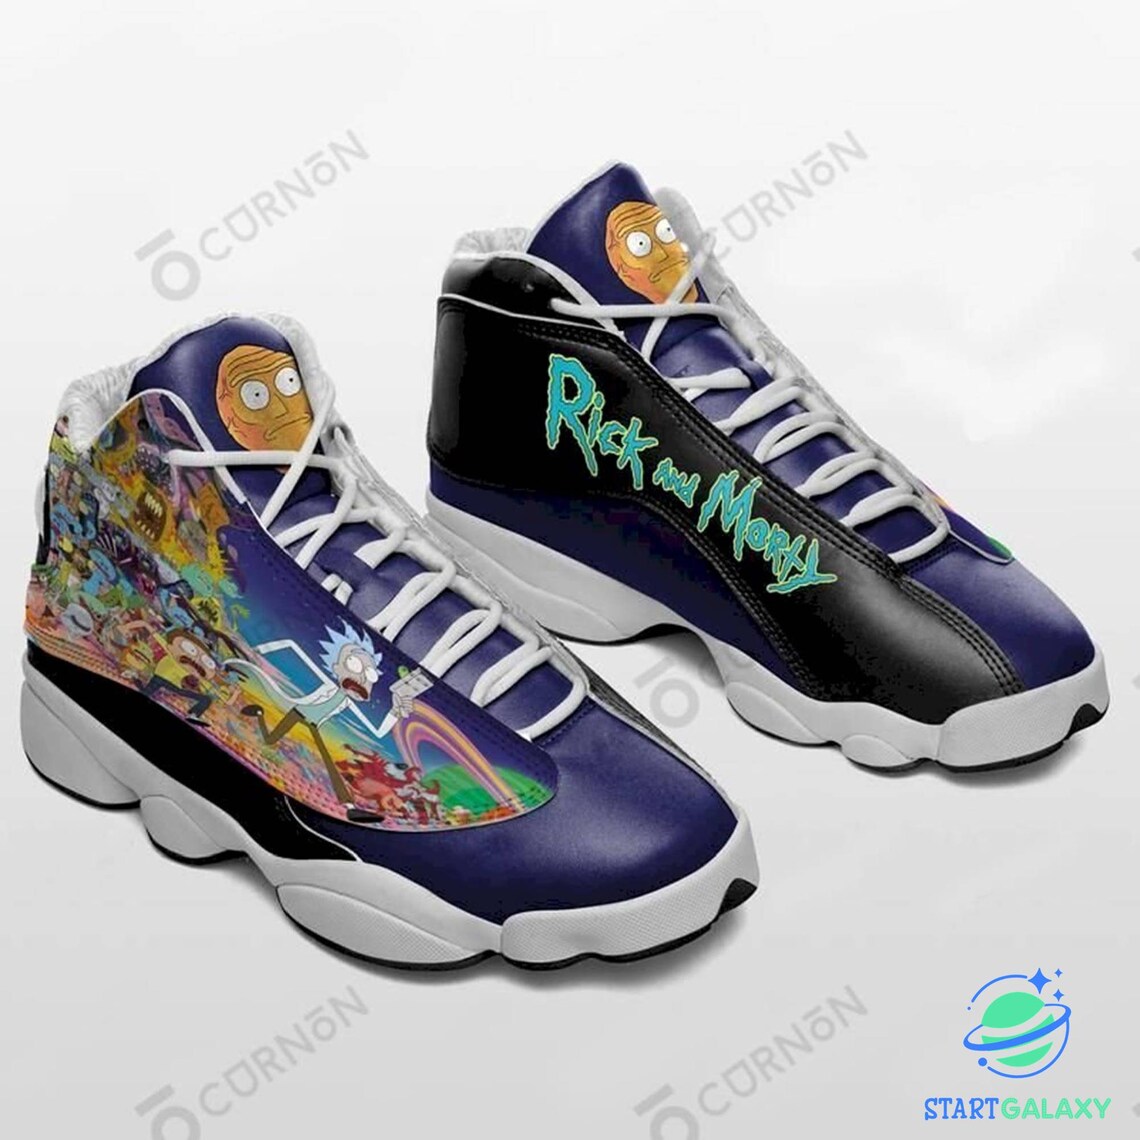 Rick and Morty AIR JD13 Sneakers 0111 Custom Jordan | Etsy